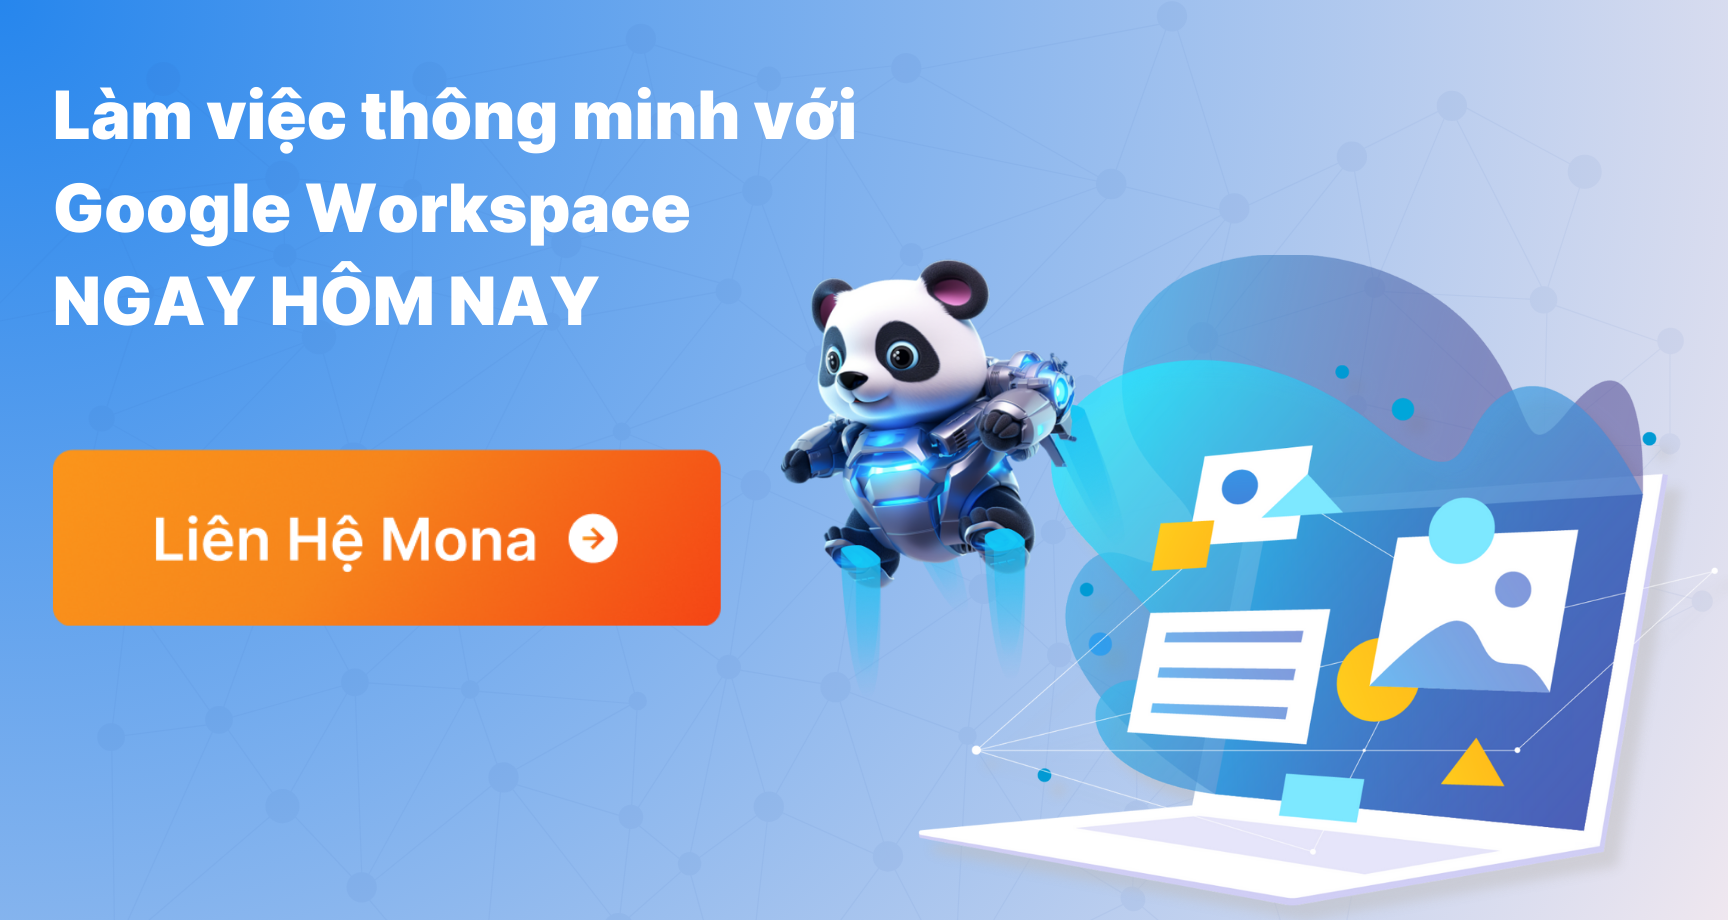 Liên hệ với Mona để làm việc thông minh với Google Workspace